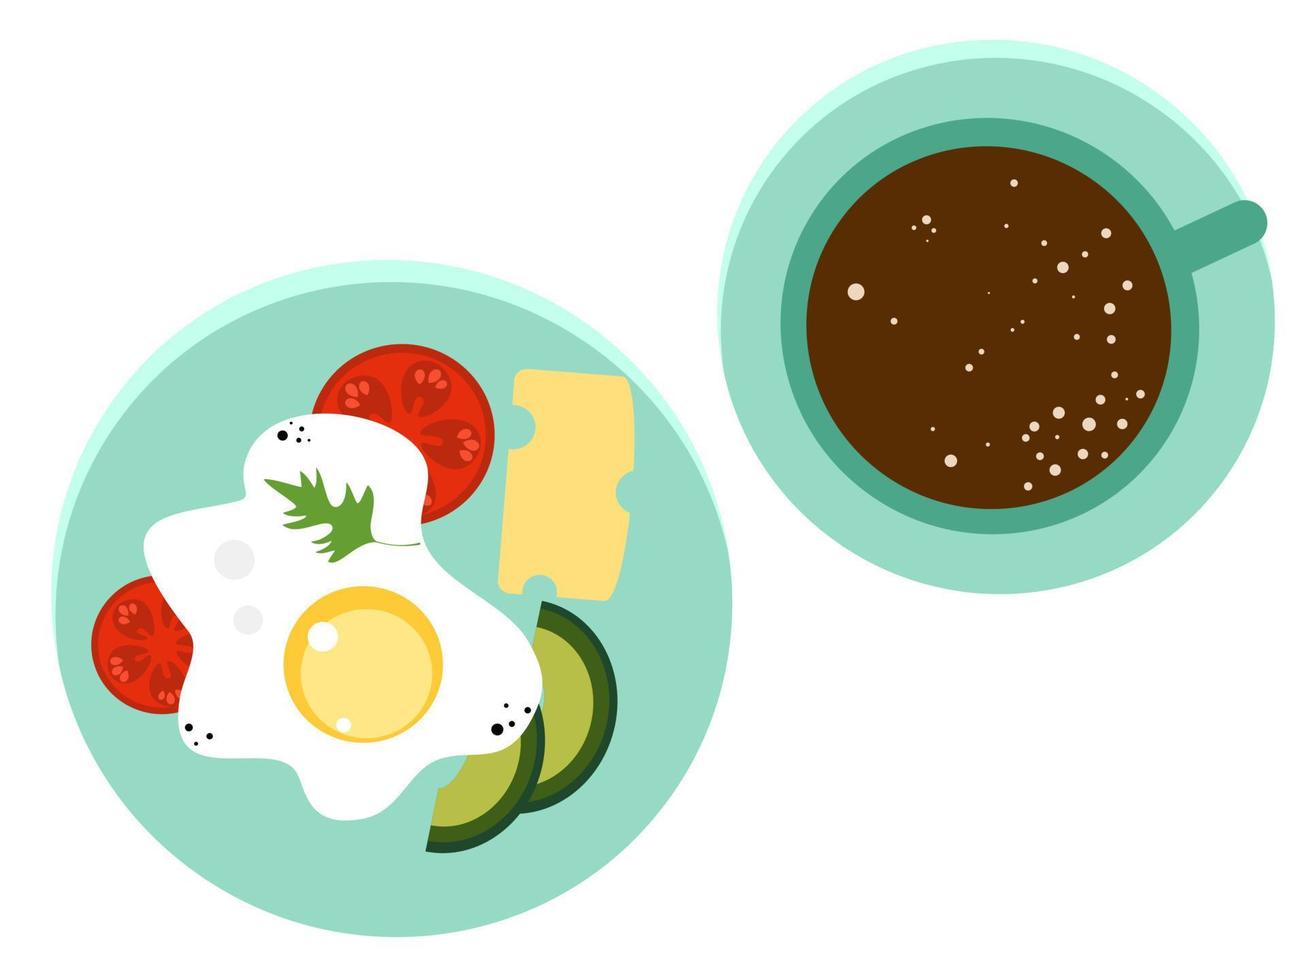 café da manhã com café e ovos. ilustração de um café da manhã. prato com ovos mexidos, queijo, abacate, tomate. ilustração plana simples vetor